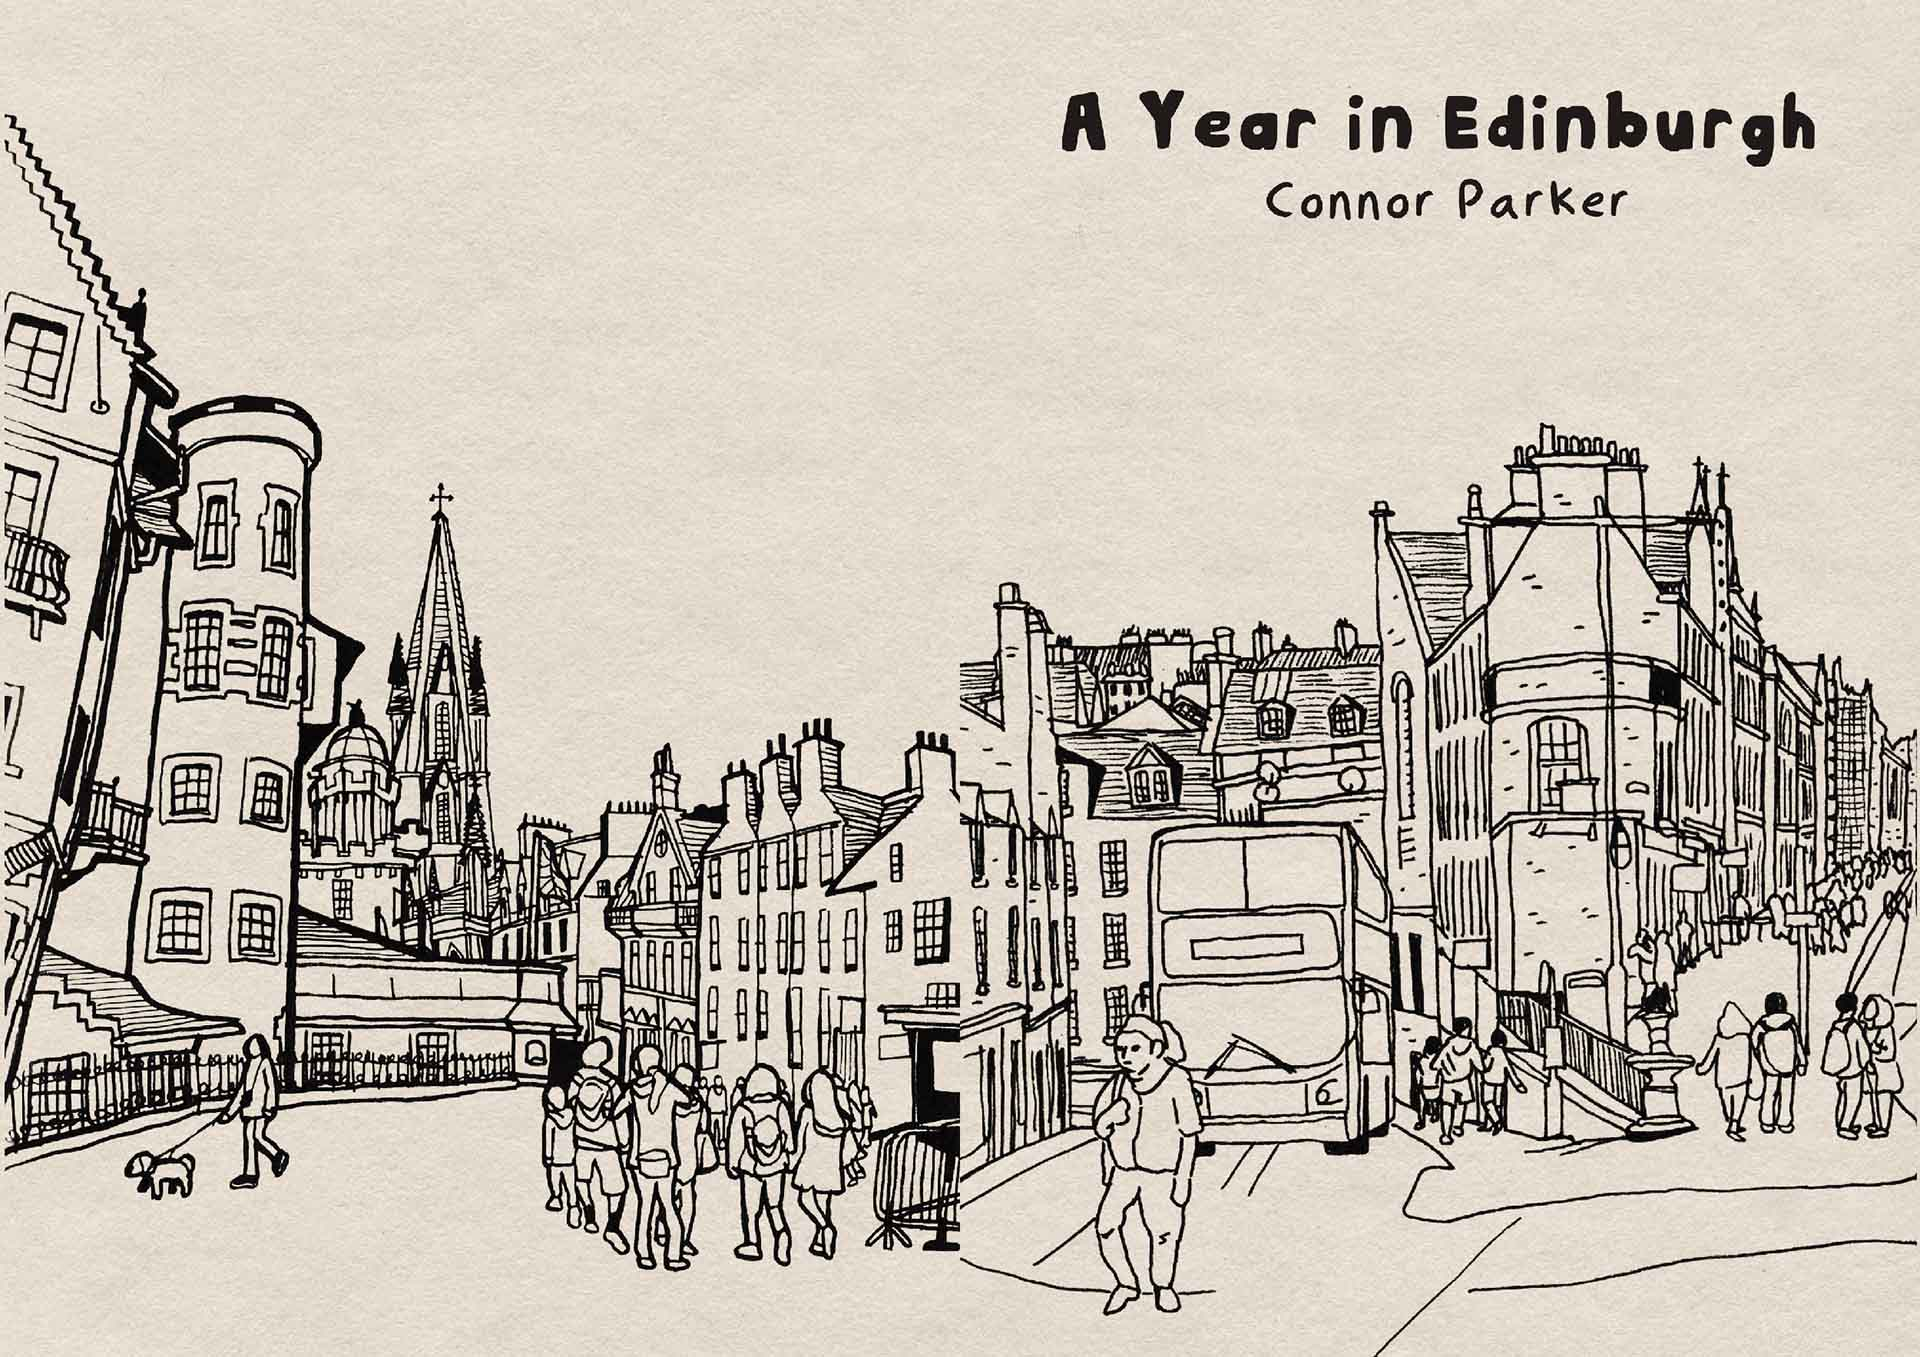 A Year in Edinburgh